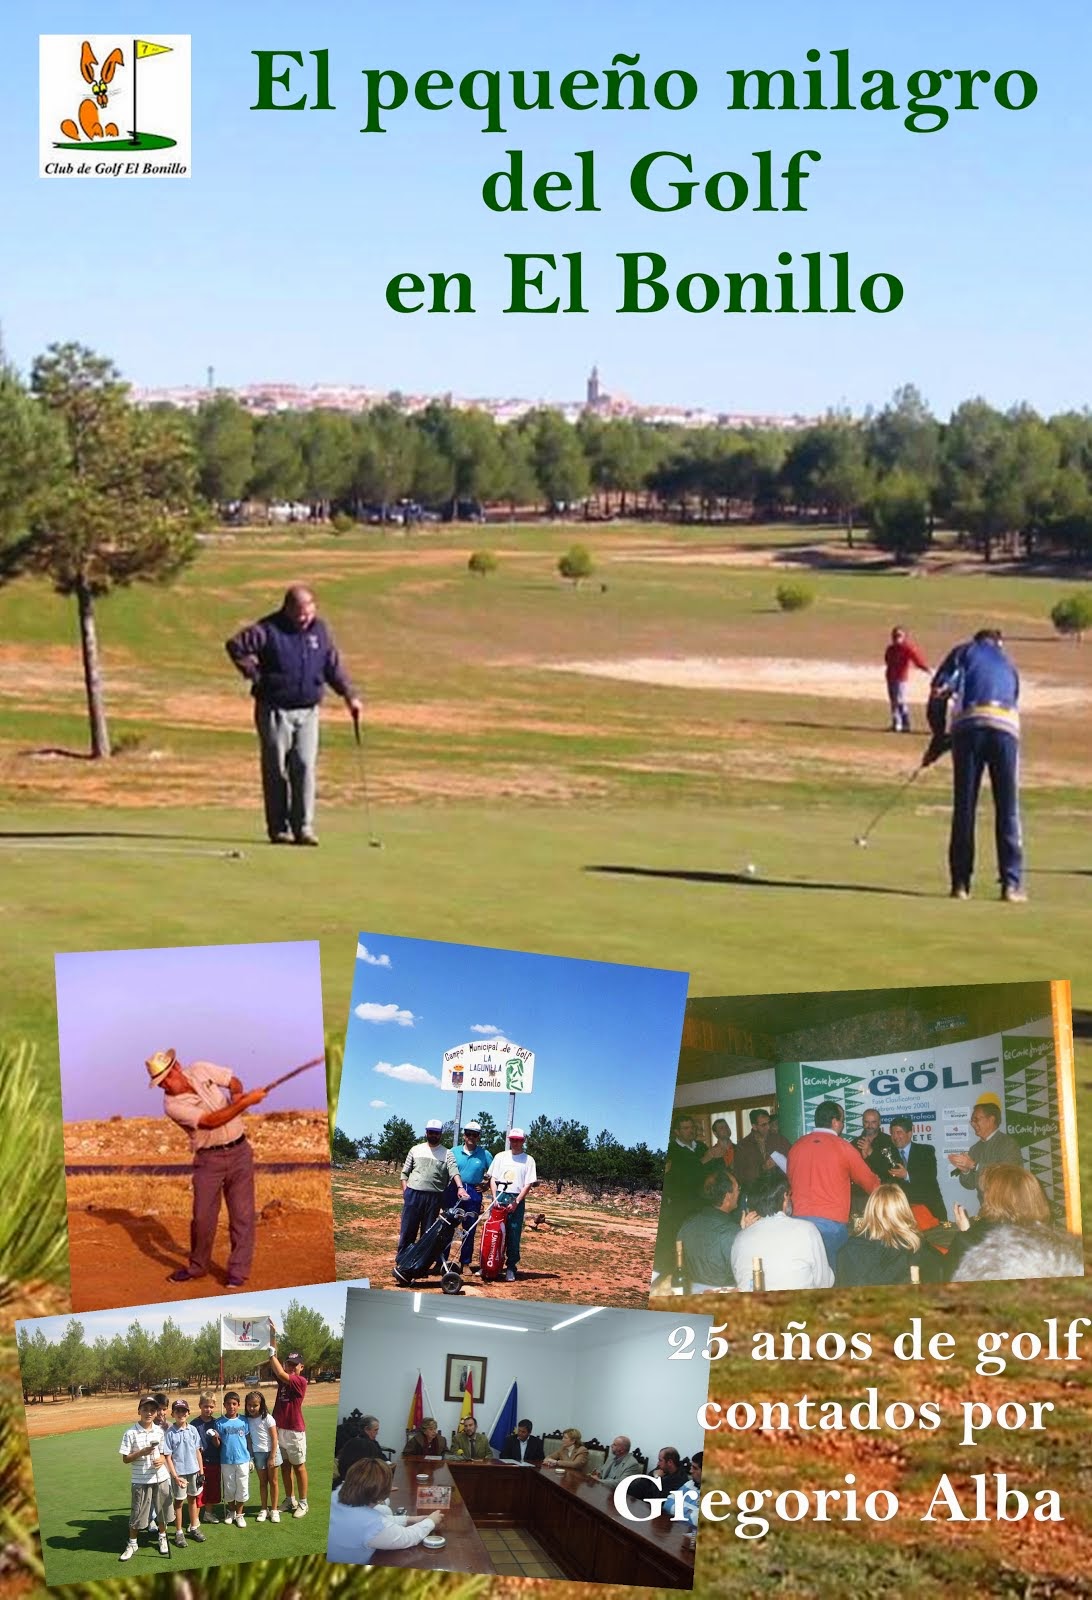 El pequeño milagro del golf en El Bonillo